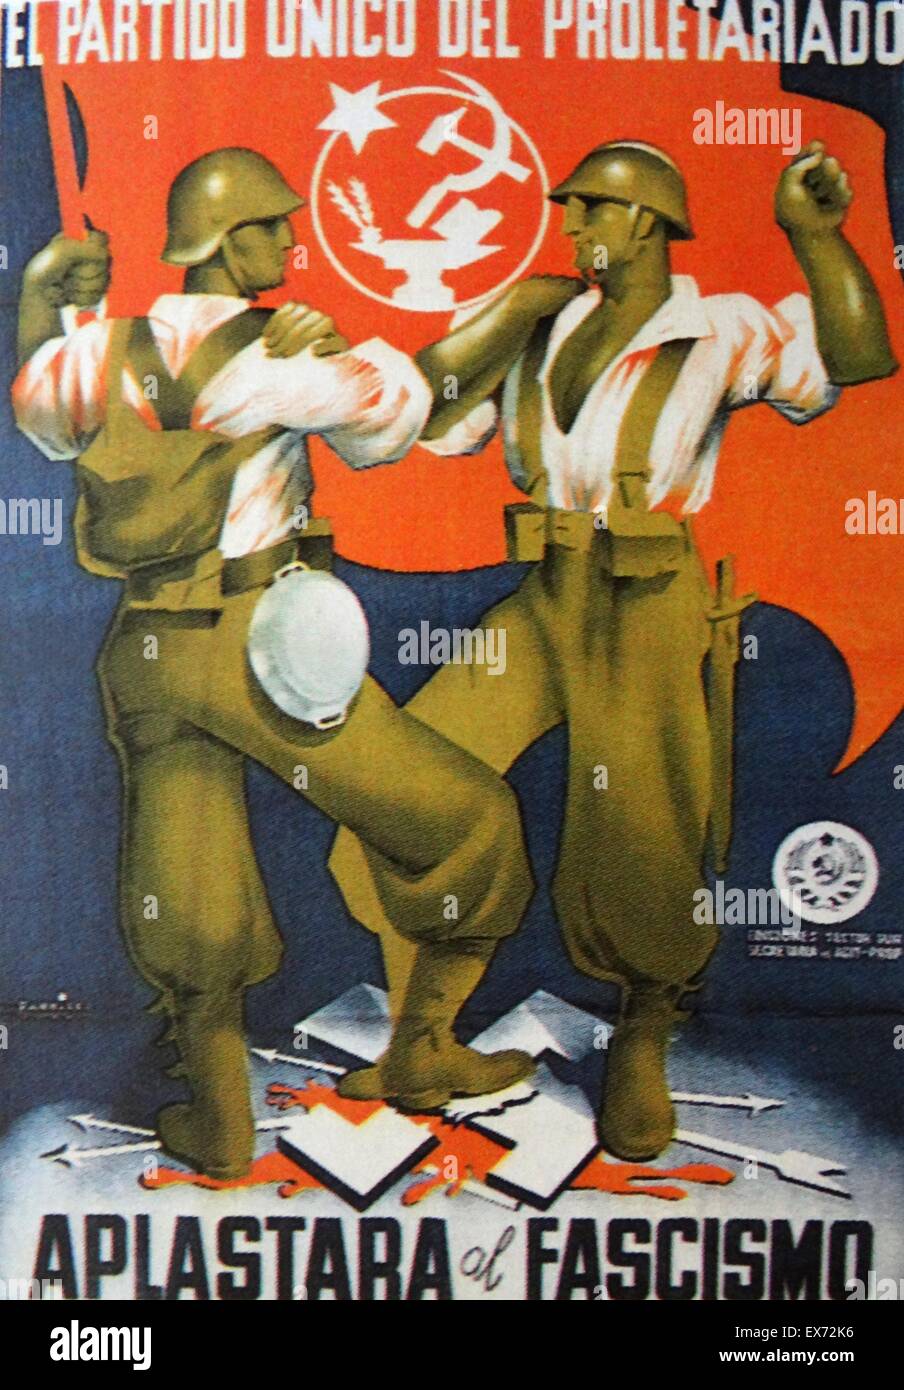 Seul le parti du prolétariat va écraser le fascisme déclare une affiche de propagande républicaine communiste, pendant la guerre civile espagnole Banque D'Images